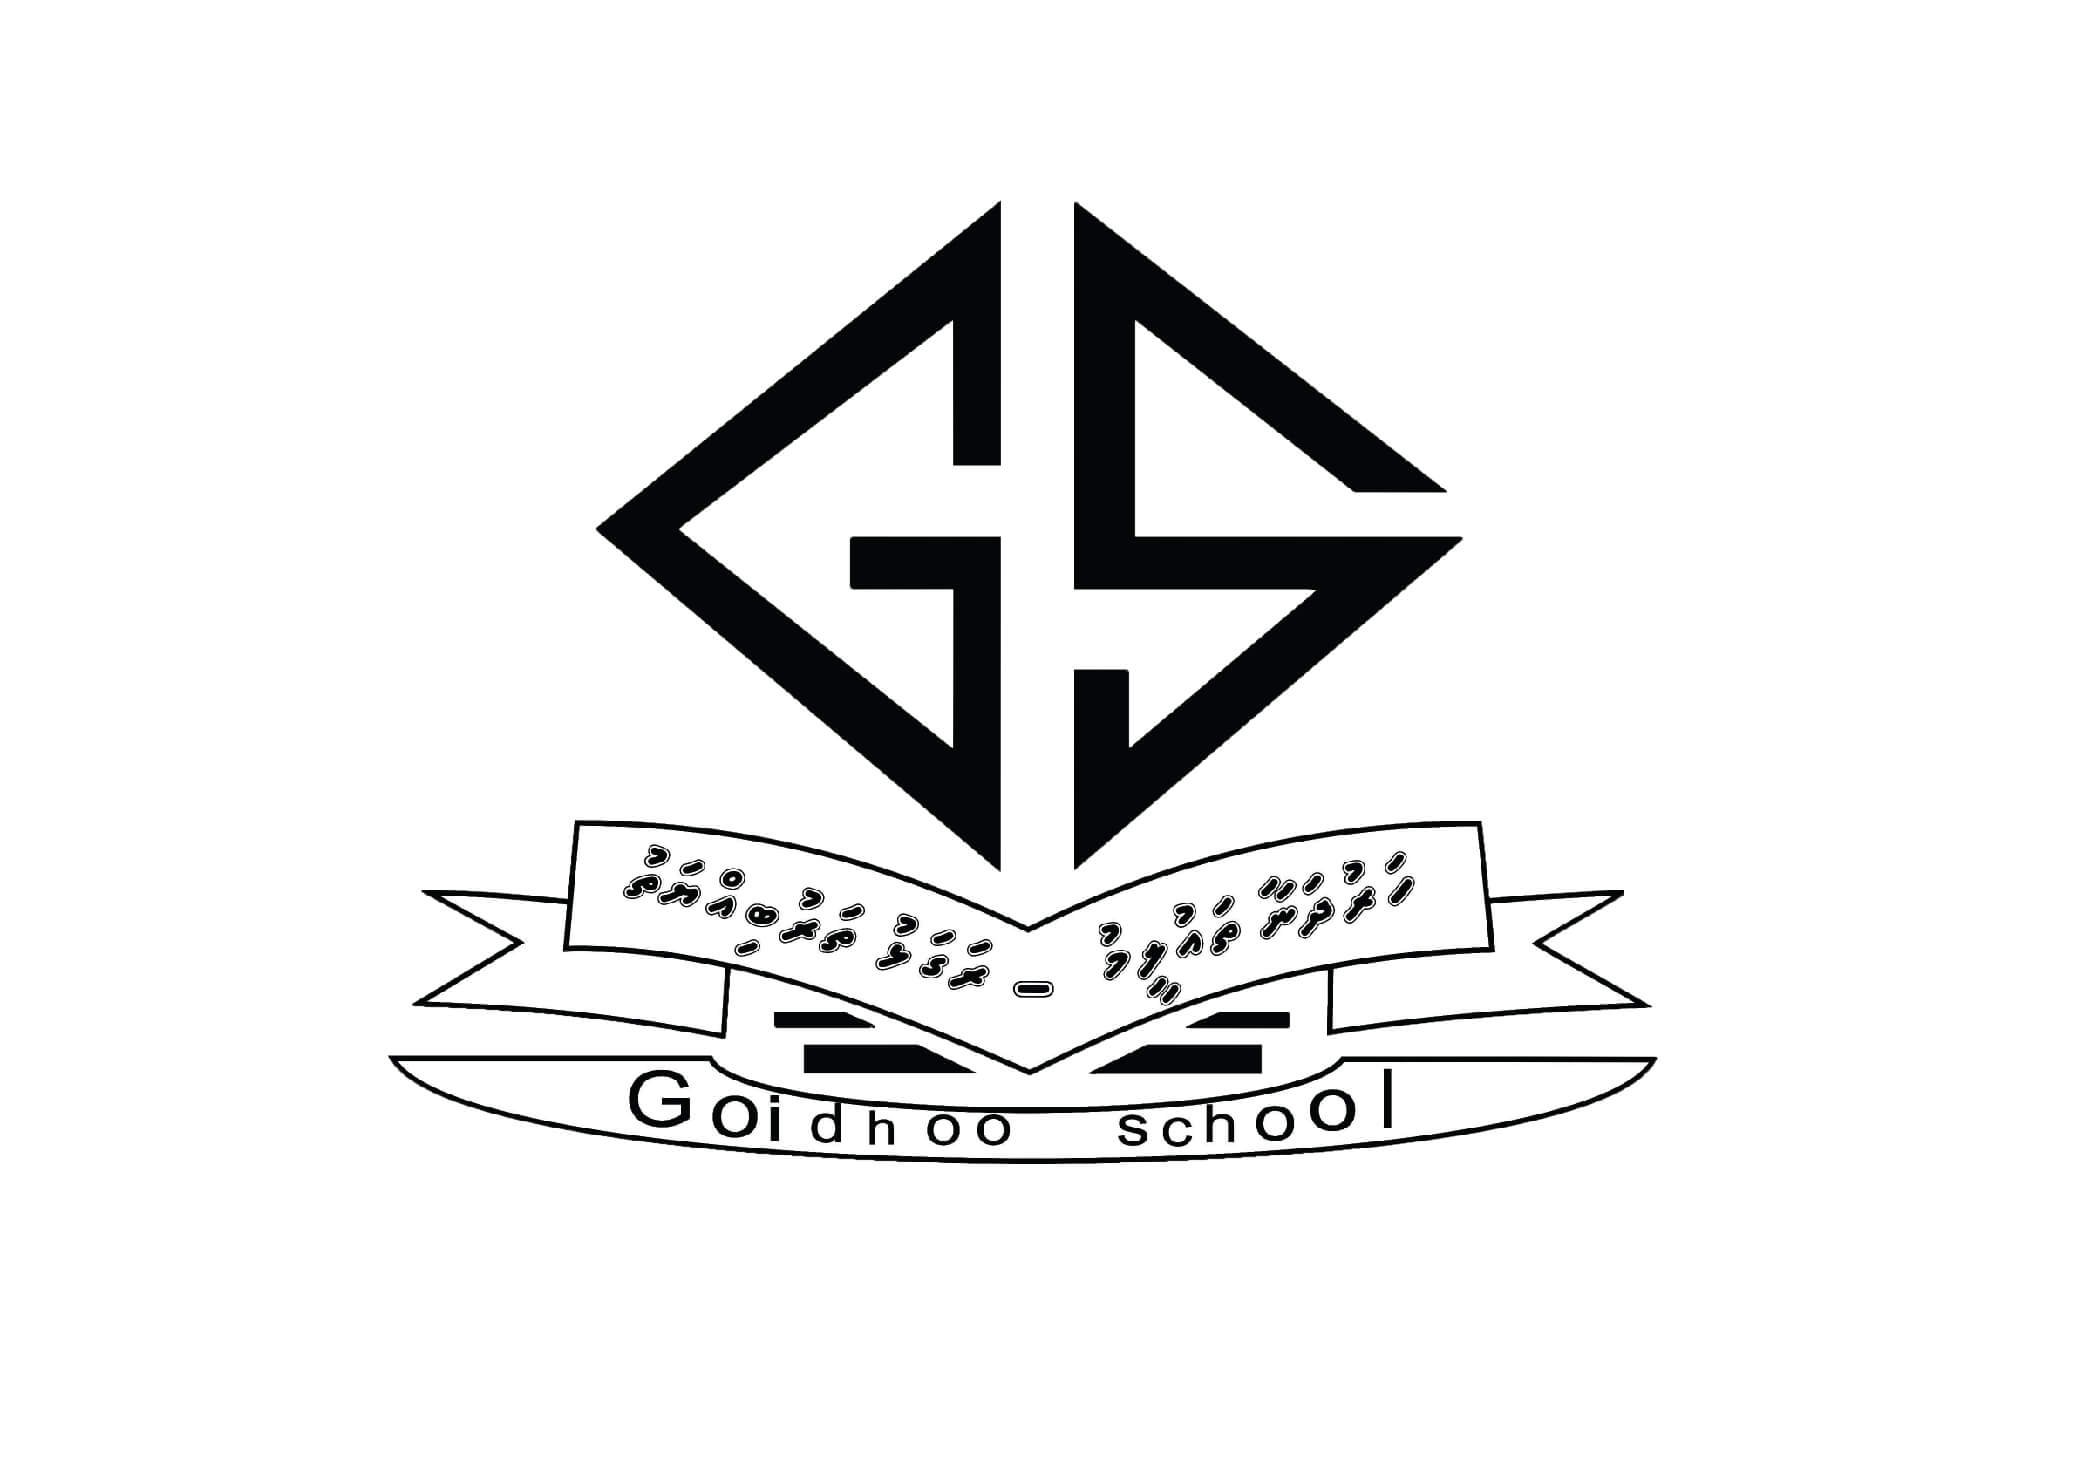 Goidhoo School